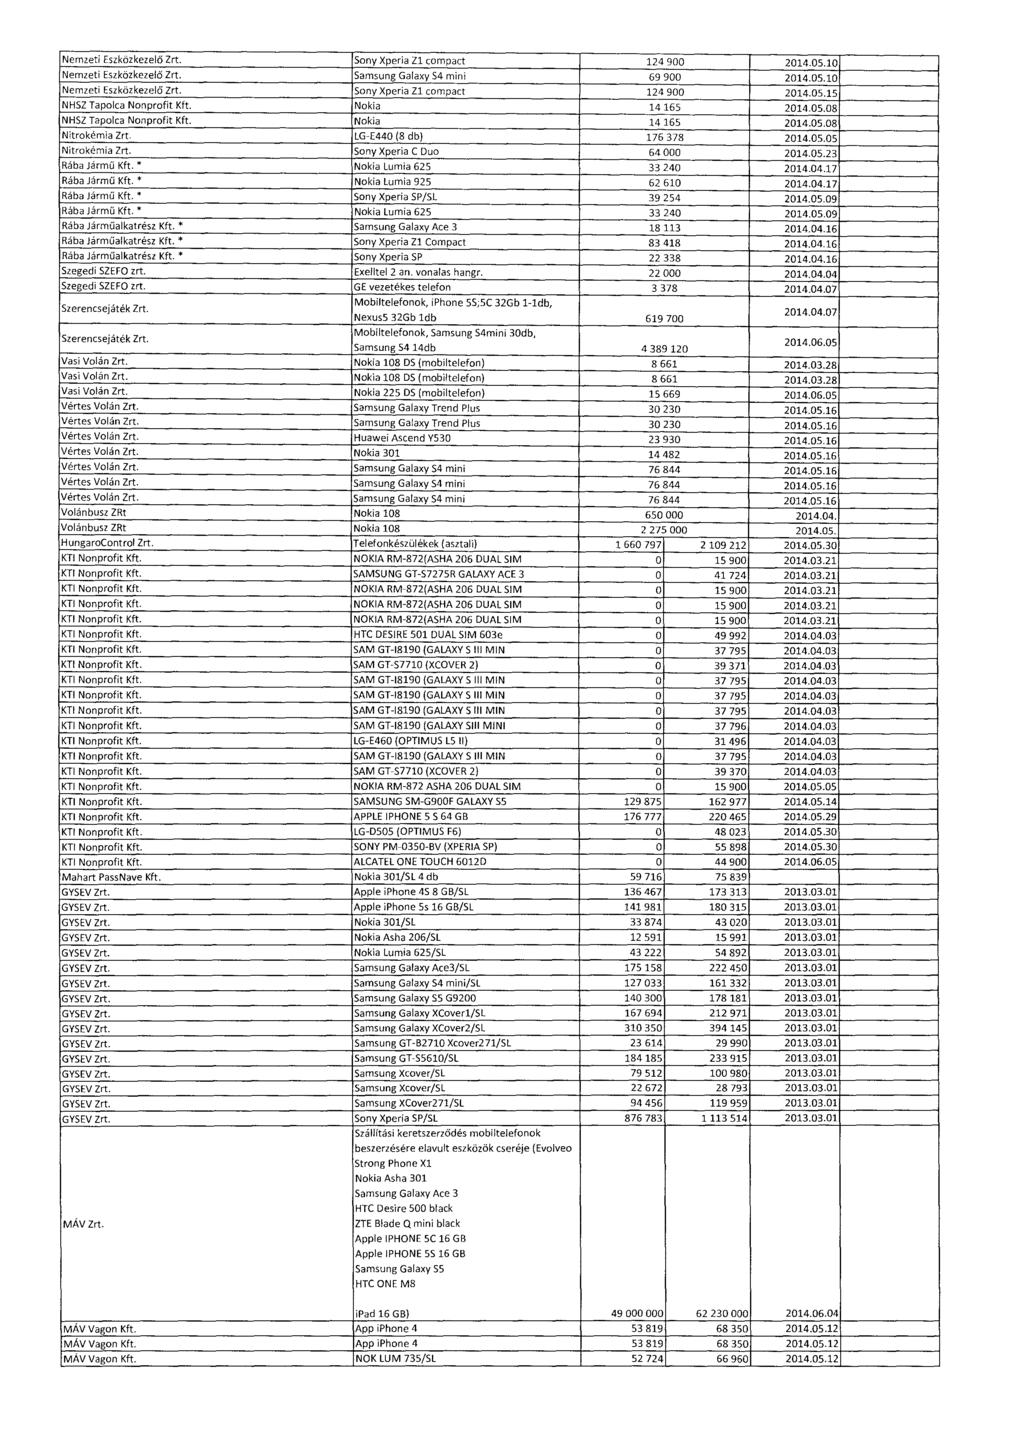 Nemzeti Eszközkezelő Zrt. Sony Xperia Zl compact 124 900 2014.05.10. Nemzeti Eszközkezelő Zrt. Samsung Galaxy S4 mini 69 900 2014.05.1 0 Nemzeti Eszközkezelő Zrt. Sony Xperia Zl compact 124 900 2014.05.1 5 NHSZ Tapolca Nonprofit Kft.